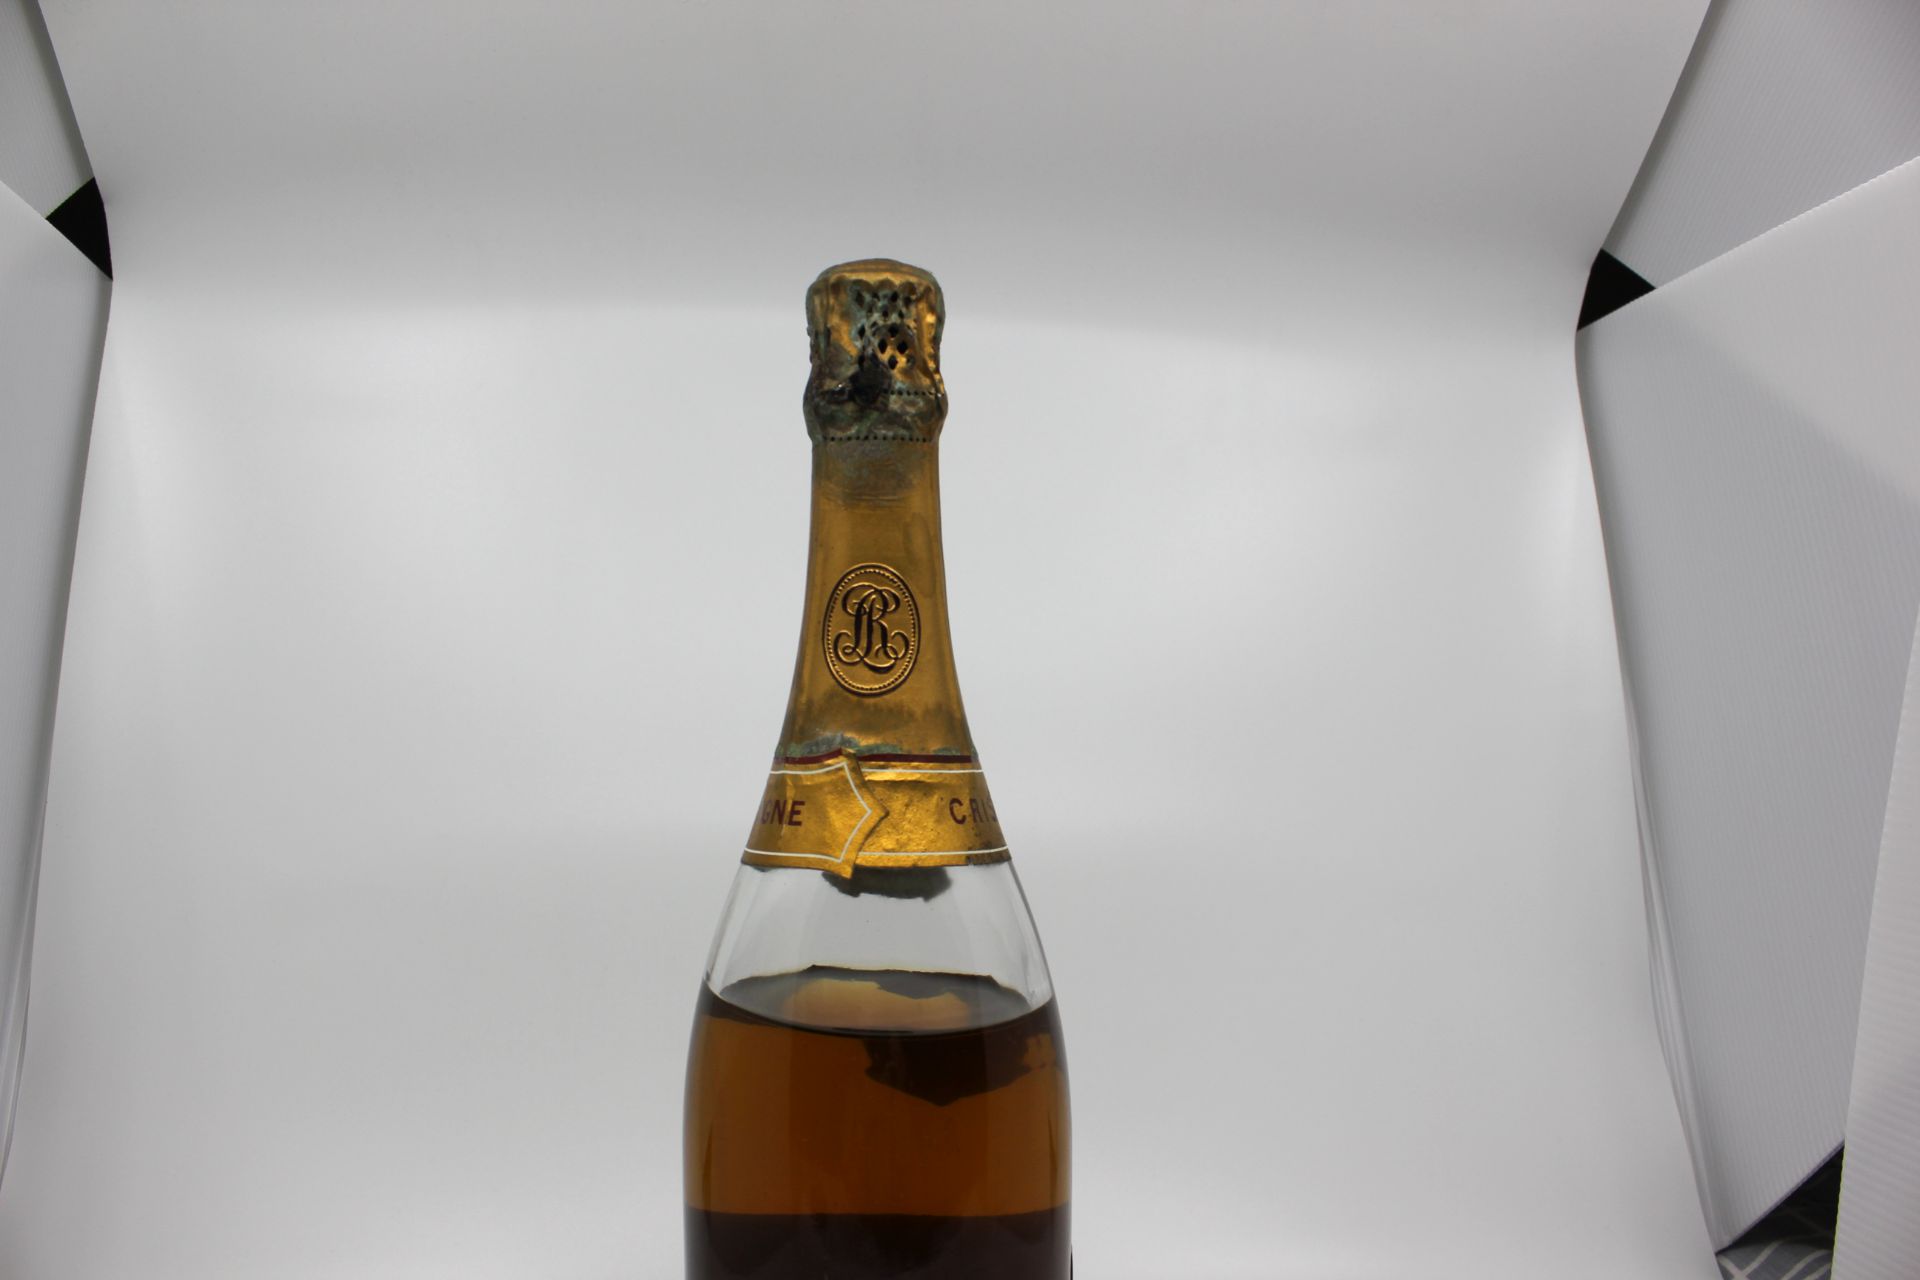 1973 Louis Roederer Cristal Brut Champagne - Image 4 of 14